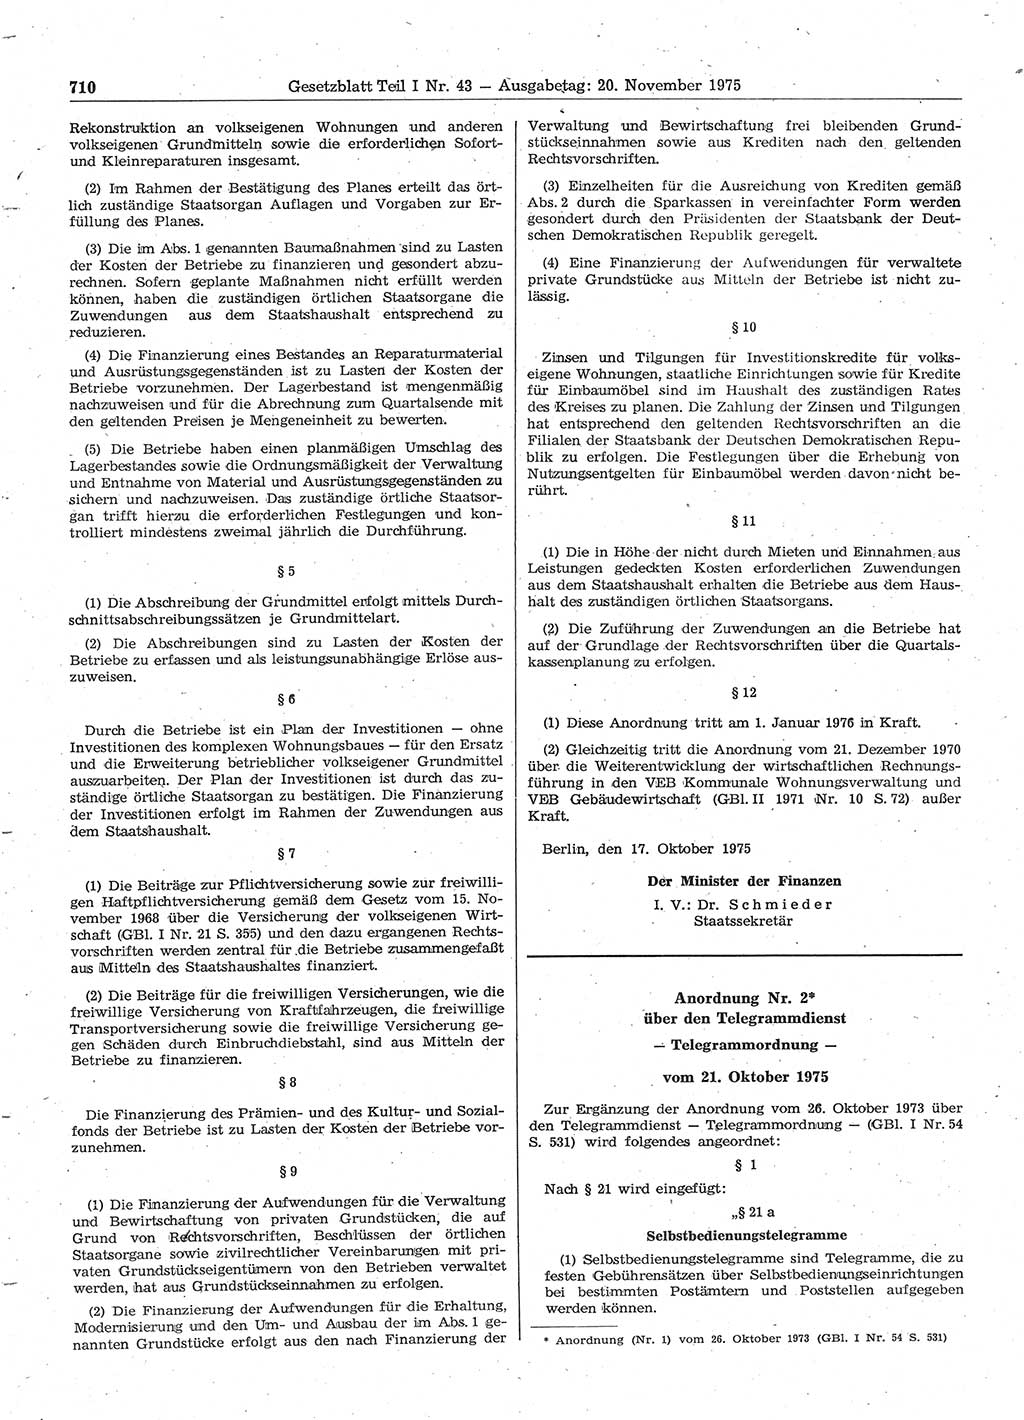 Gesetzblatt (GBl.) der Deutschen Demokratischen Republik (DDR) Teil Ⅰ 1975, Seite 710 (GBl. DDR Ⅰ 1975, S. 710)